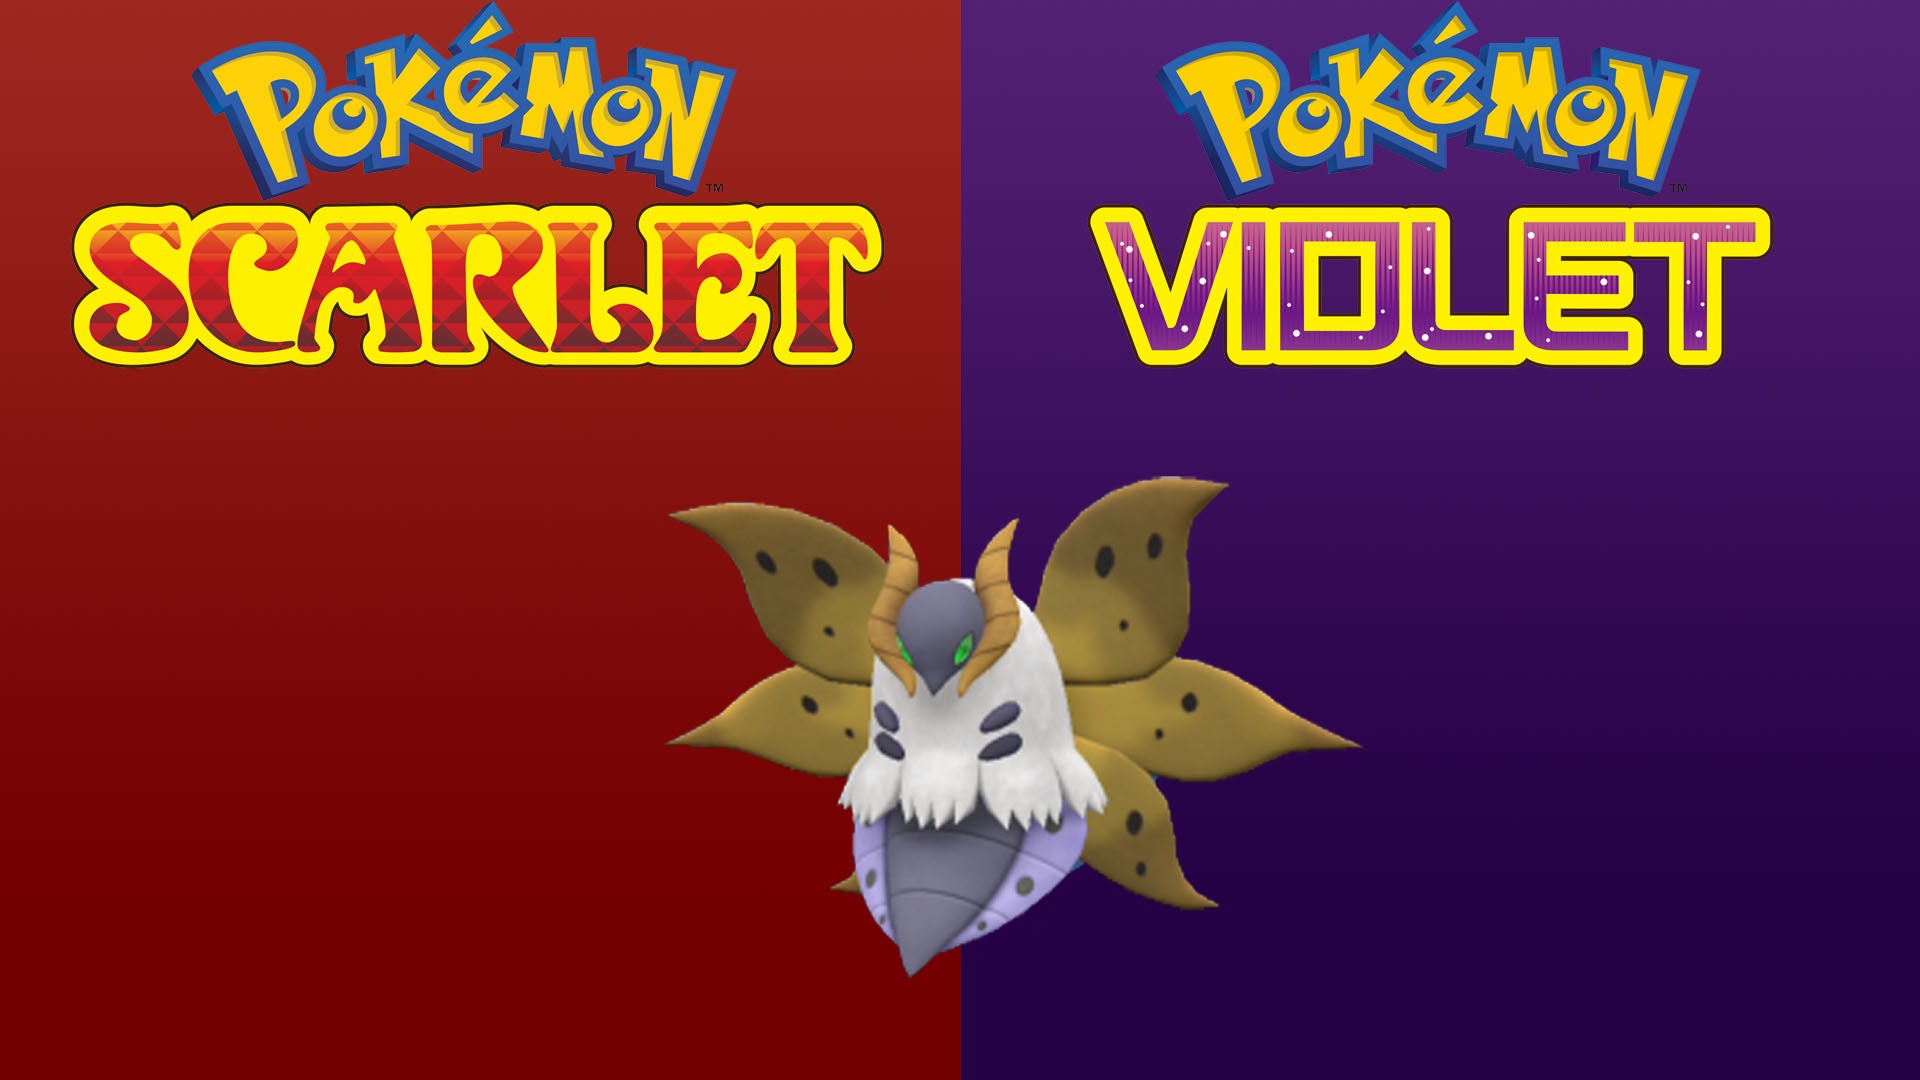 Pokemon Scarlet and Violet Volcarona 6IV-EV Trained - Pokemon4Ever